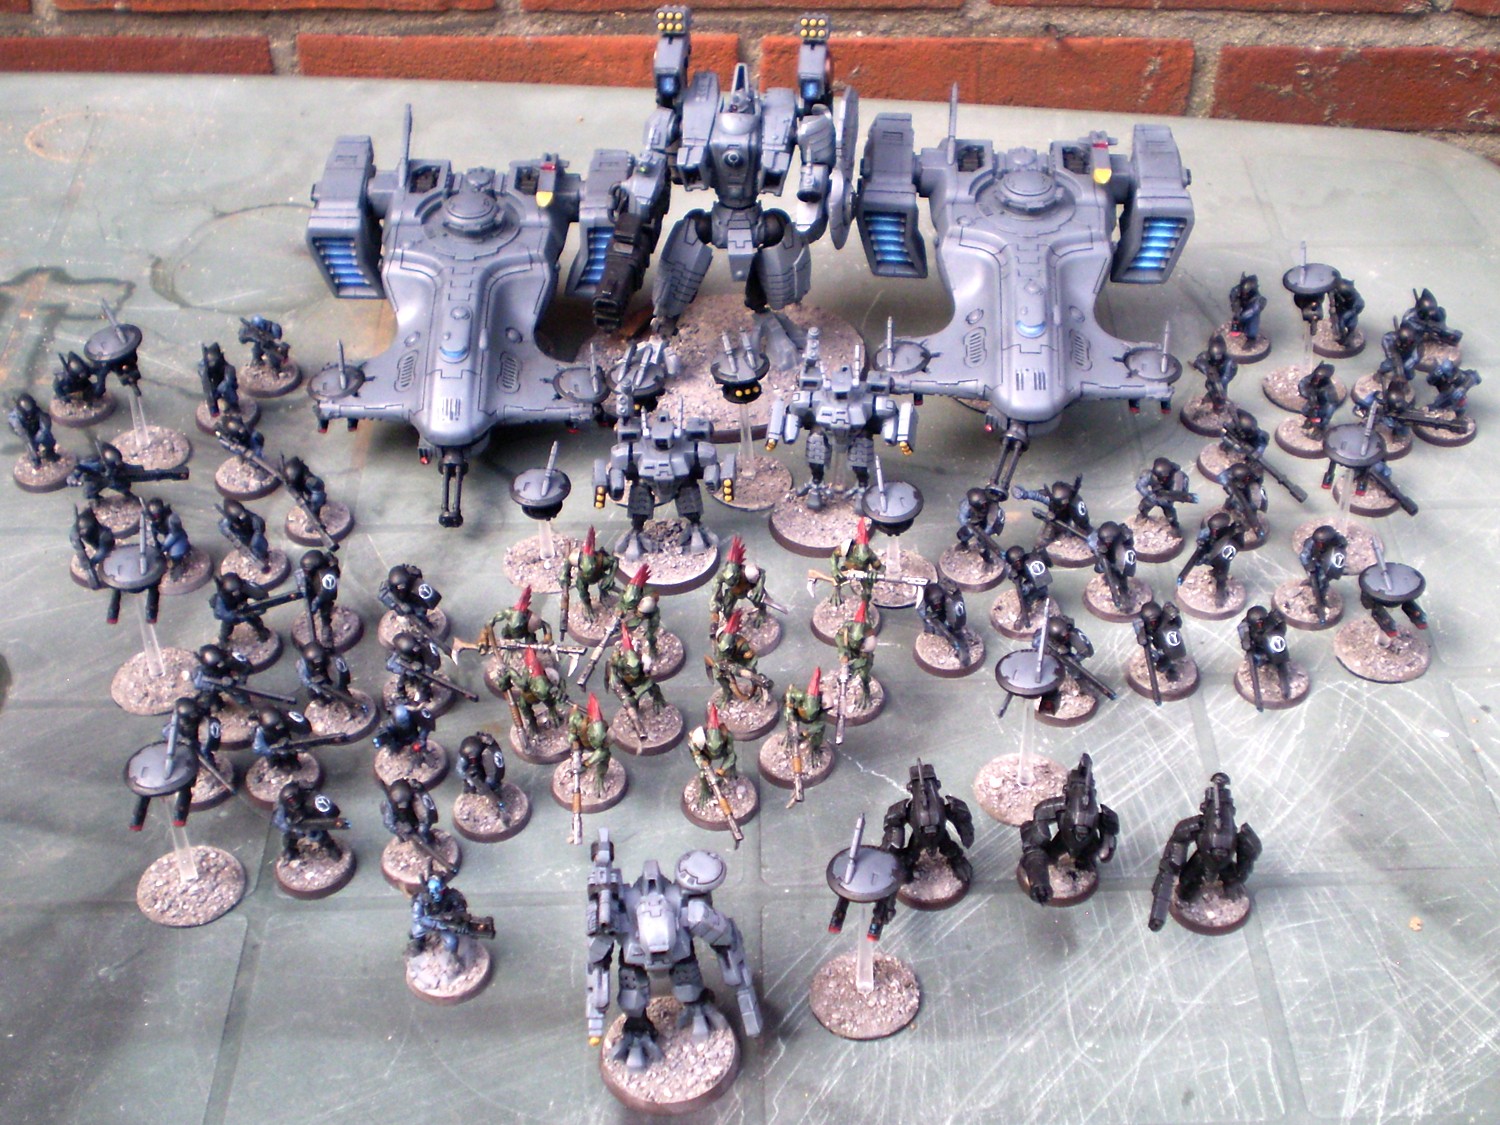 My Tau Empire army for Warhammer 40.000